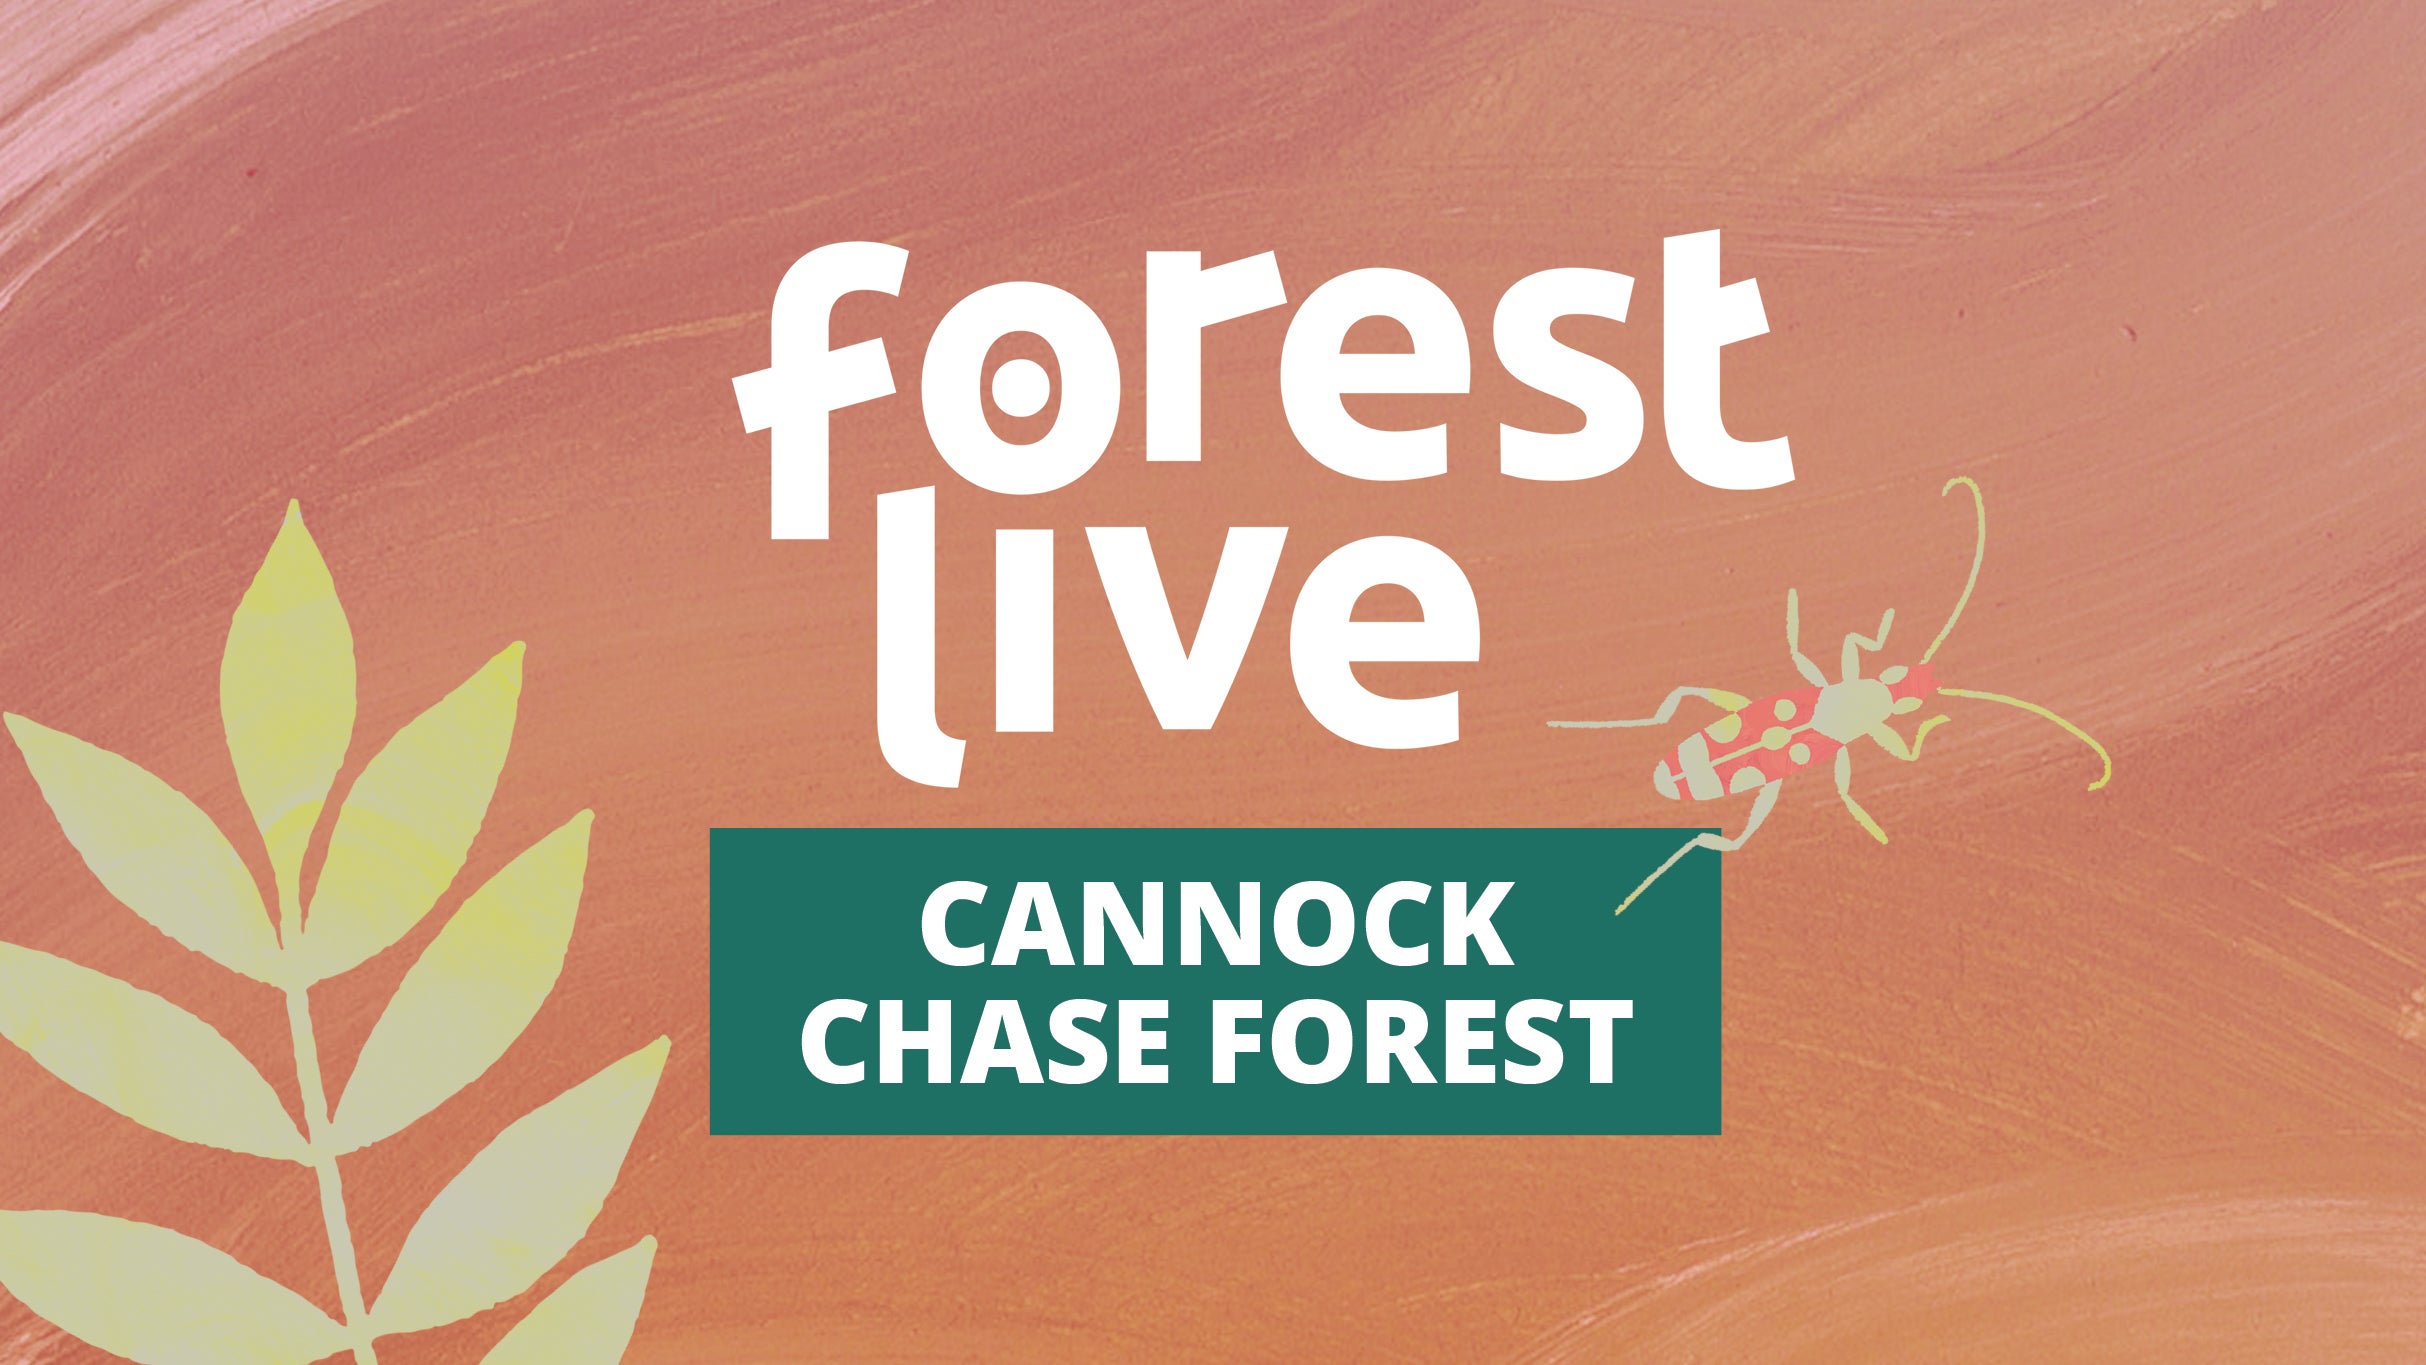 Cannock Chase Forest presale information on freepresalepasswords.com